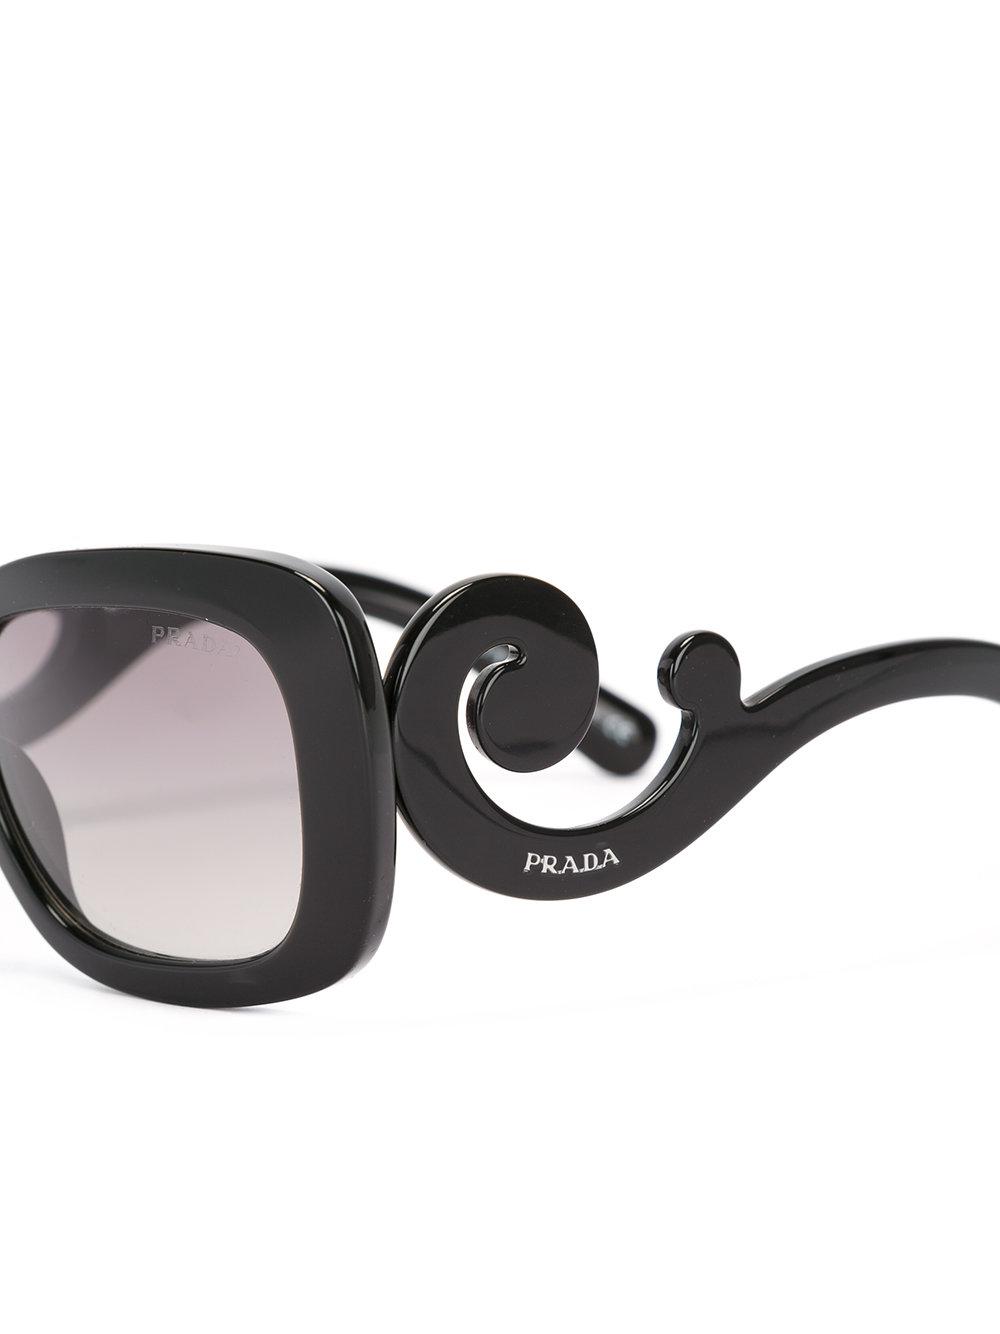 Prada Baroque Sunglasses in Black | Lyst